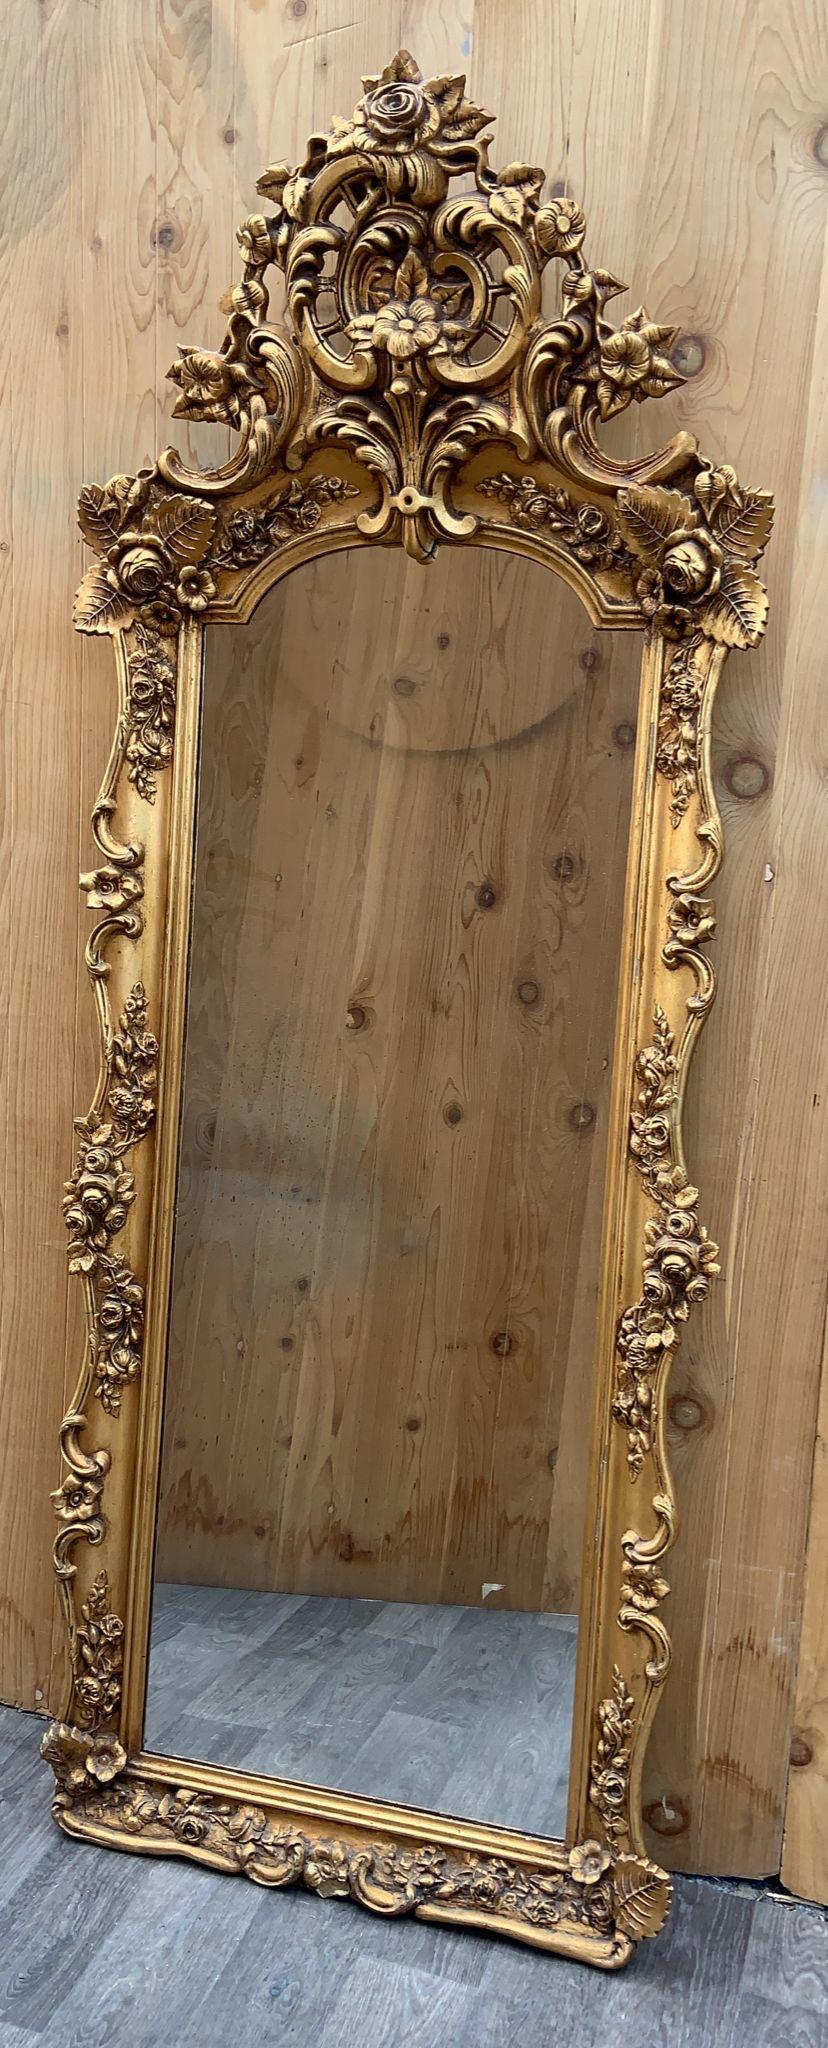 Antike Rokoko-Stil verzierten Boden Wandspiegel geschnitzt 

Der antike Rokoko-Wandspiegel mit Schnitzereien ist ein exquisiter und großzügig bemessener Spiegel im opulenten Rokoko-Stil. Dieser Spiegel mit seiner atemberaubenden vergoldeten